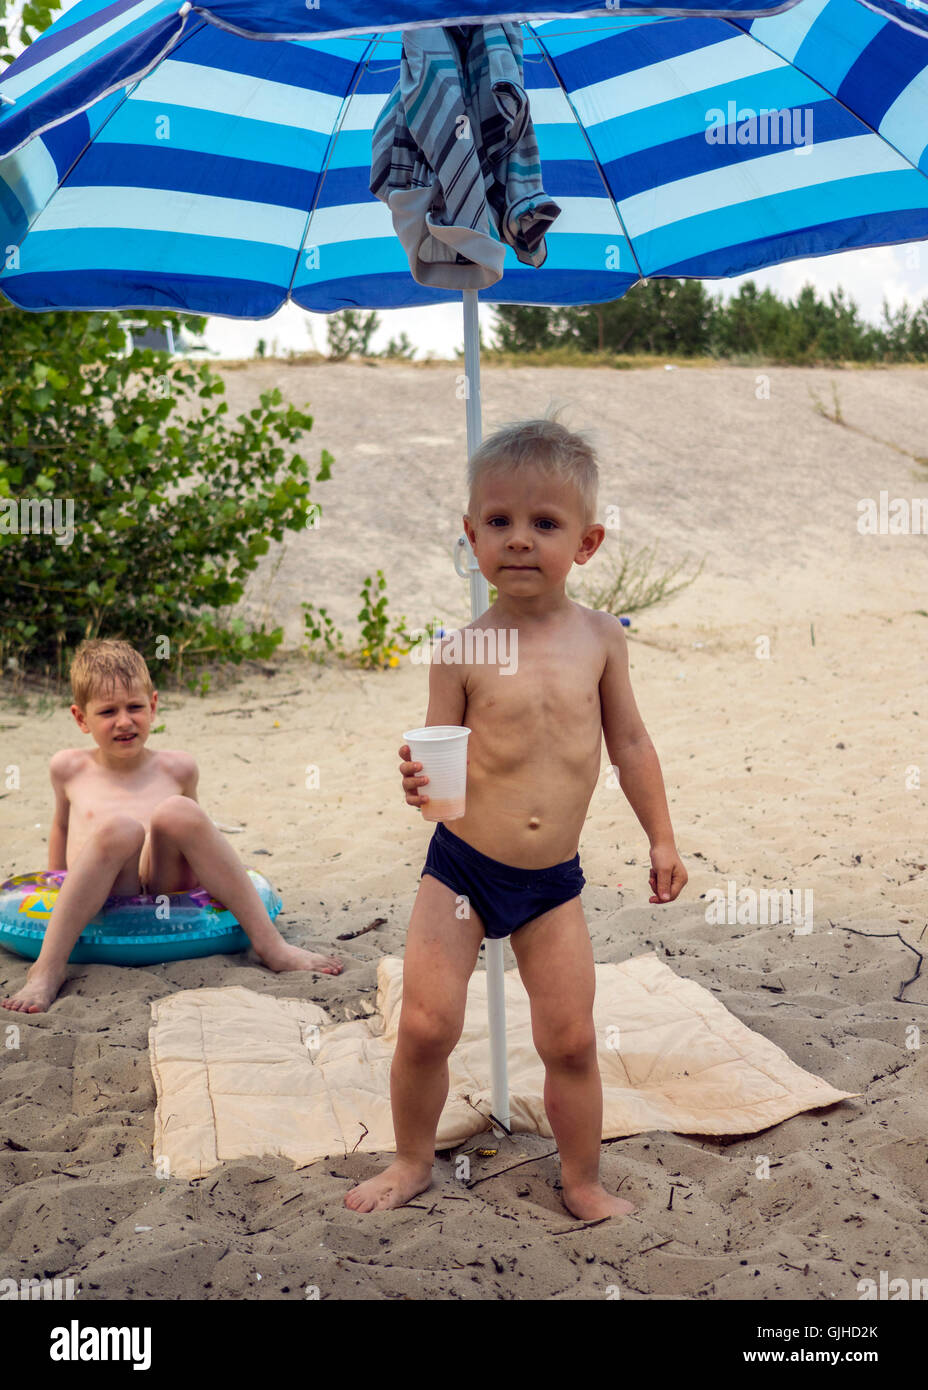 Two boys on beach Stock Photo